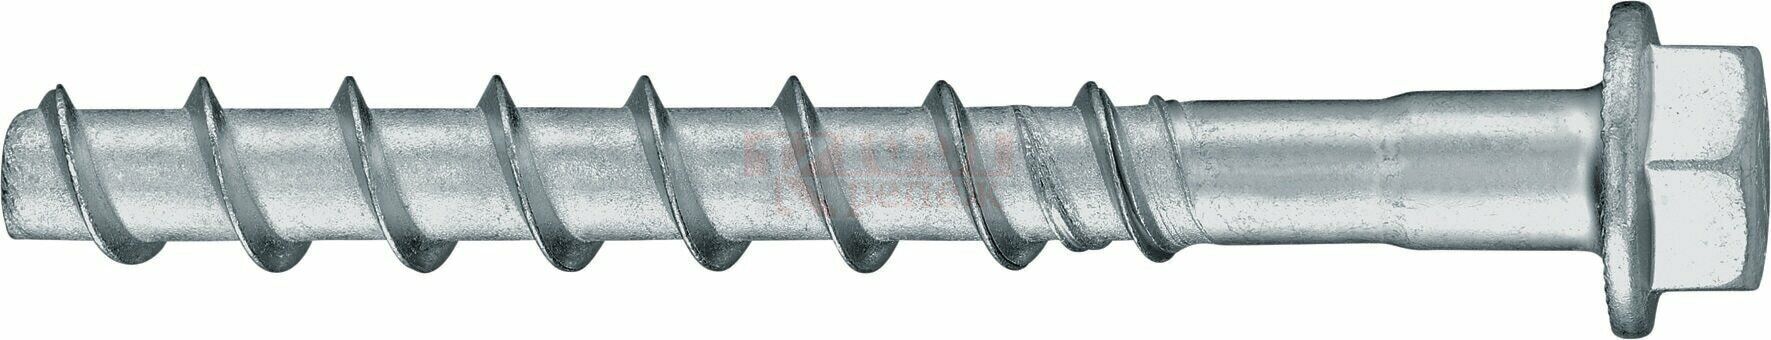 HUS2-H 8/10 10x85 Анкер-шуруп HILTI для бетона оц. сталь, 10x85 30/10 мм